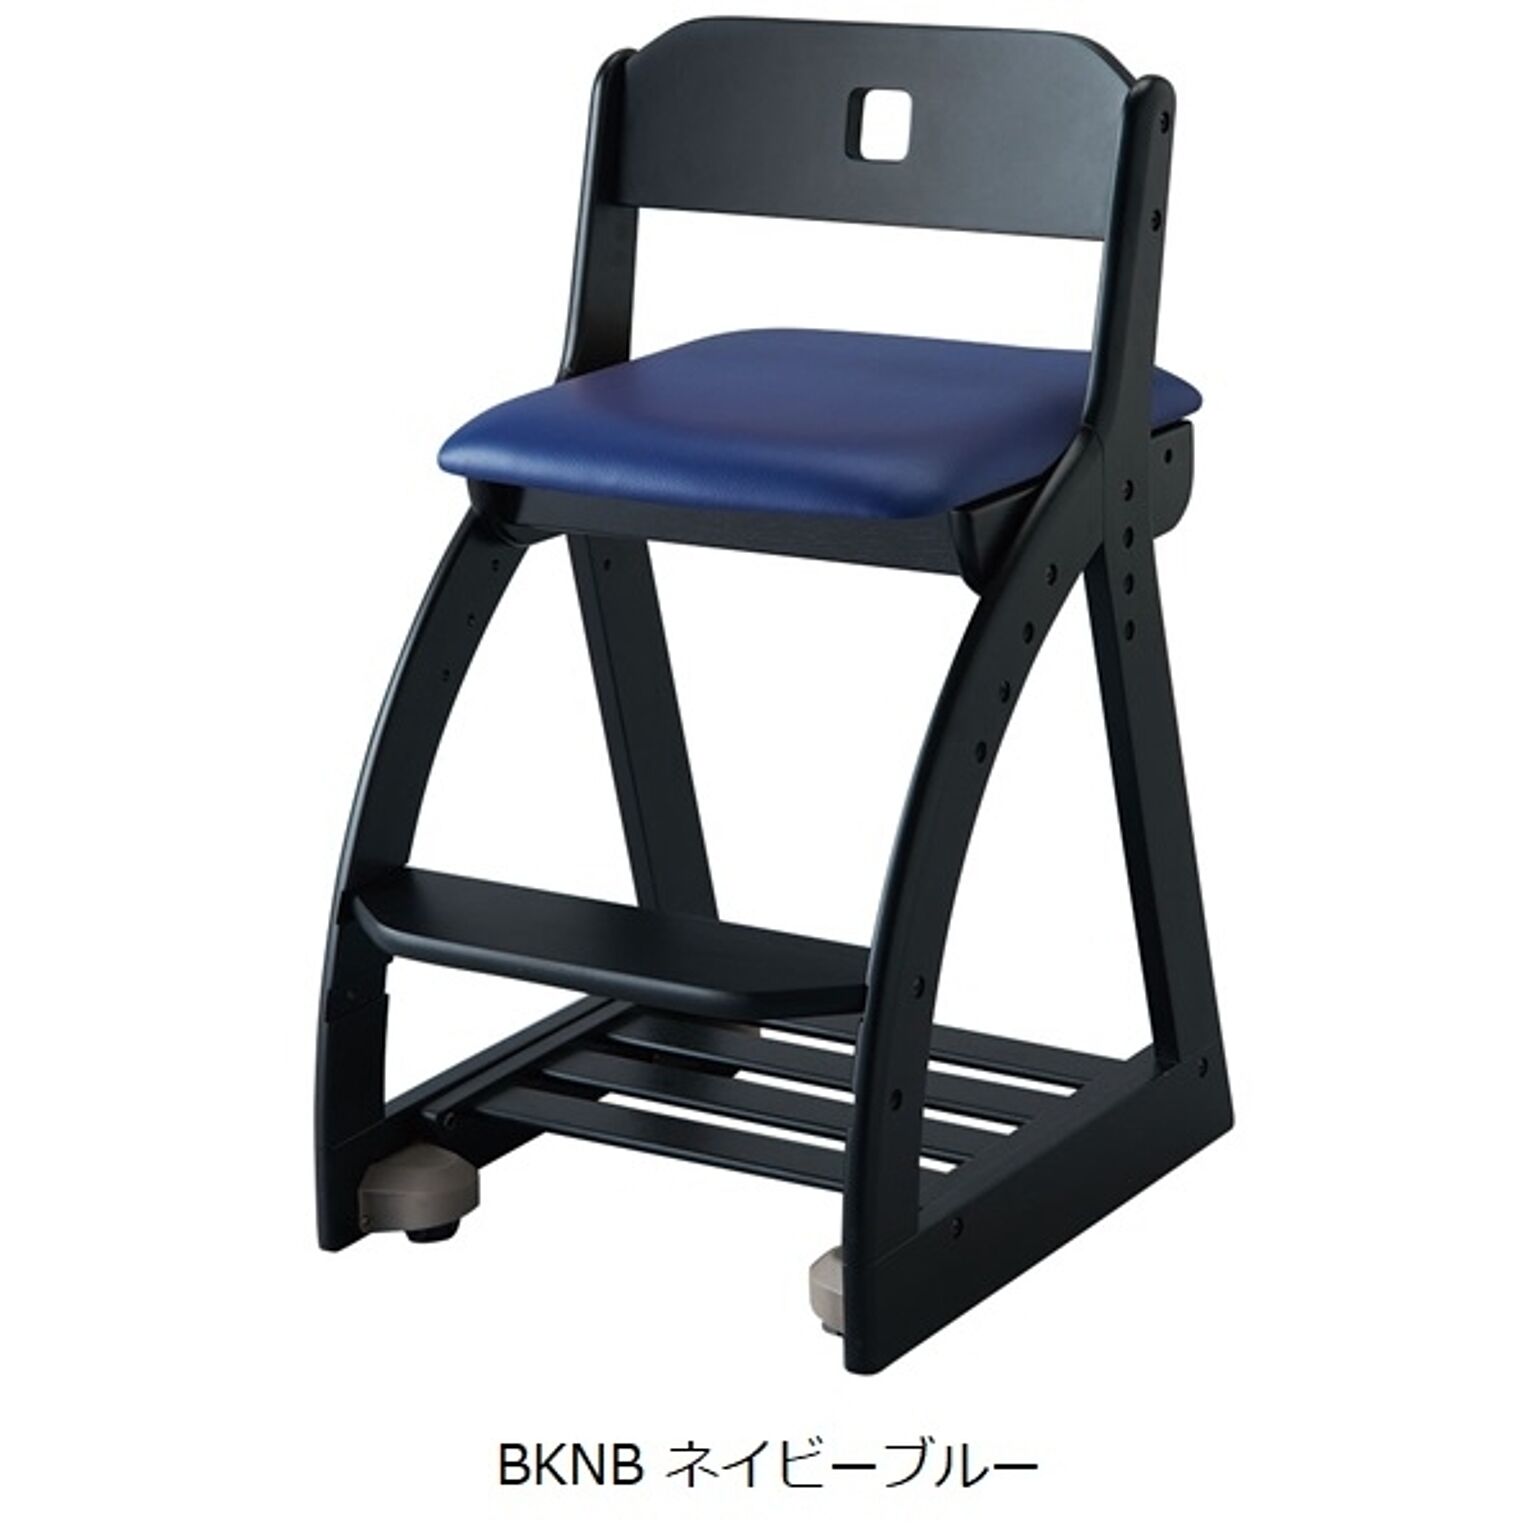 スクエアチェア 木製 幅41.3 奥行49 高さ75 カラー3色 組立式 座面高さ調節 キャスター付 ラバーウッド材 デスクチェア 木製 椅子 学習イス KOIZUMI コイズミ 